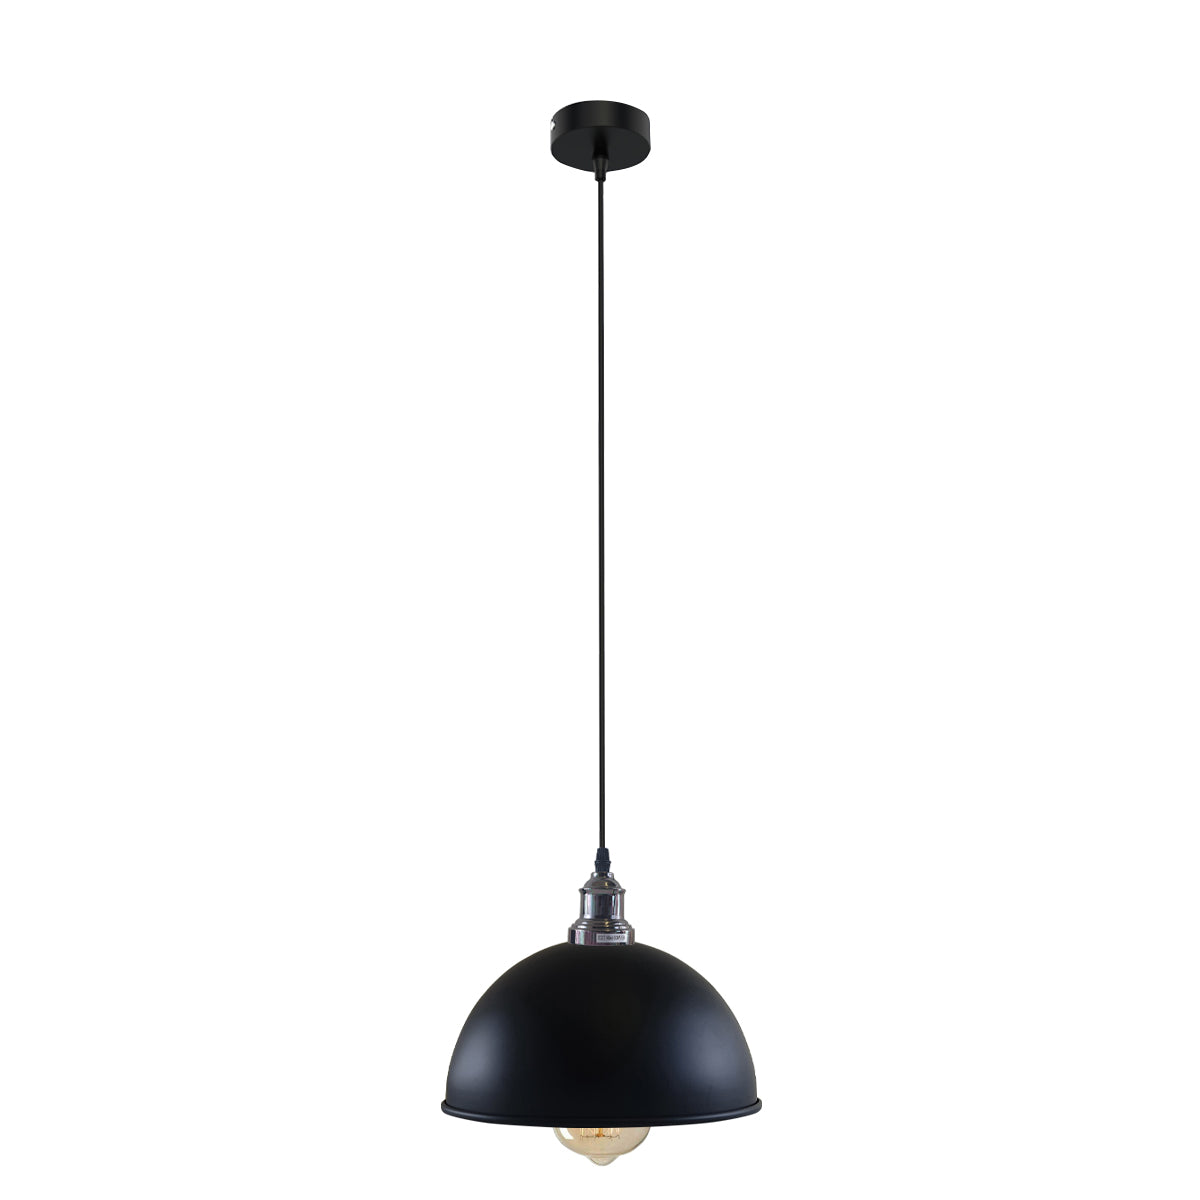 Retro Industrial Ceiling E27 Hanging Pendant Light Shade Black White Inner~1601 - LEDSone UK Ltd